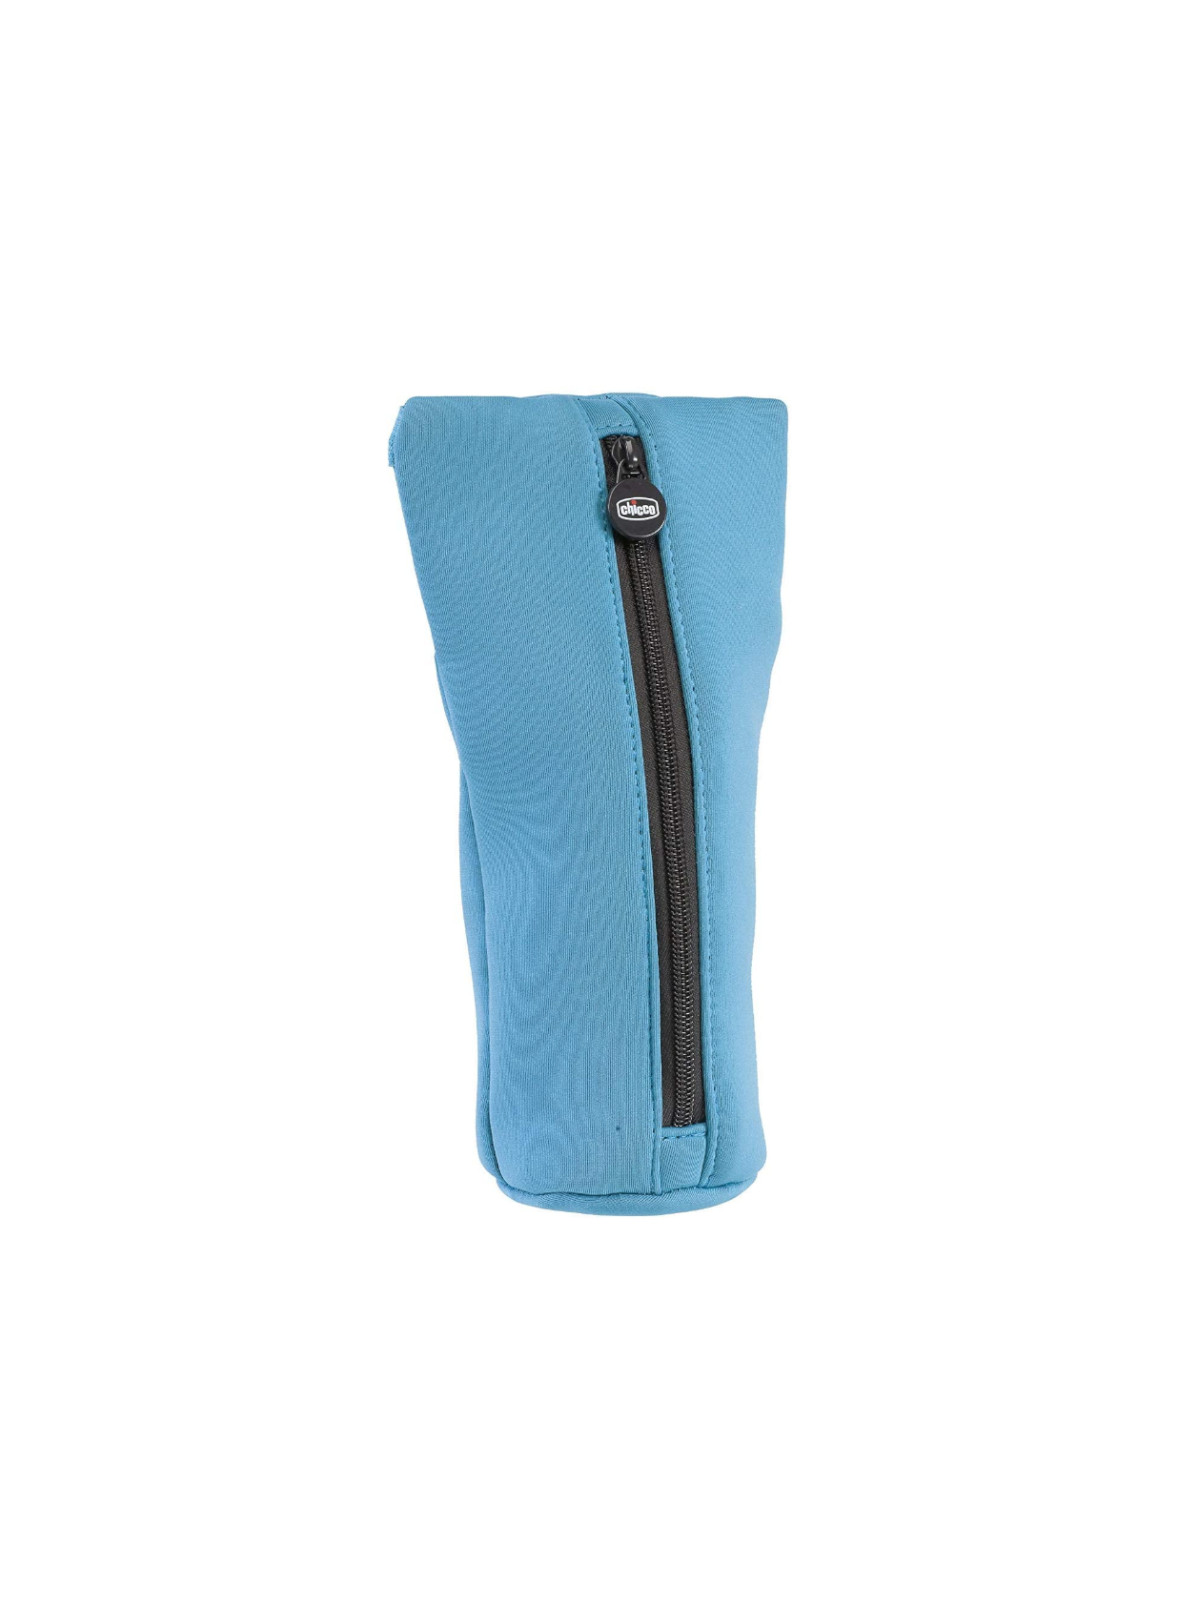 Porta biberon termico in tessuto azzurro - Chicco